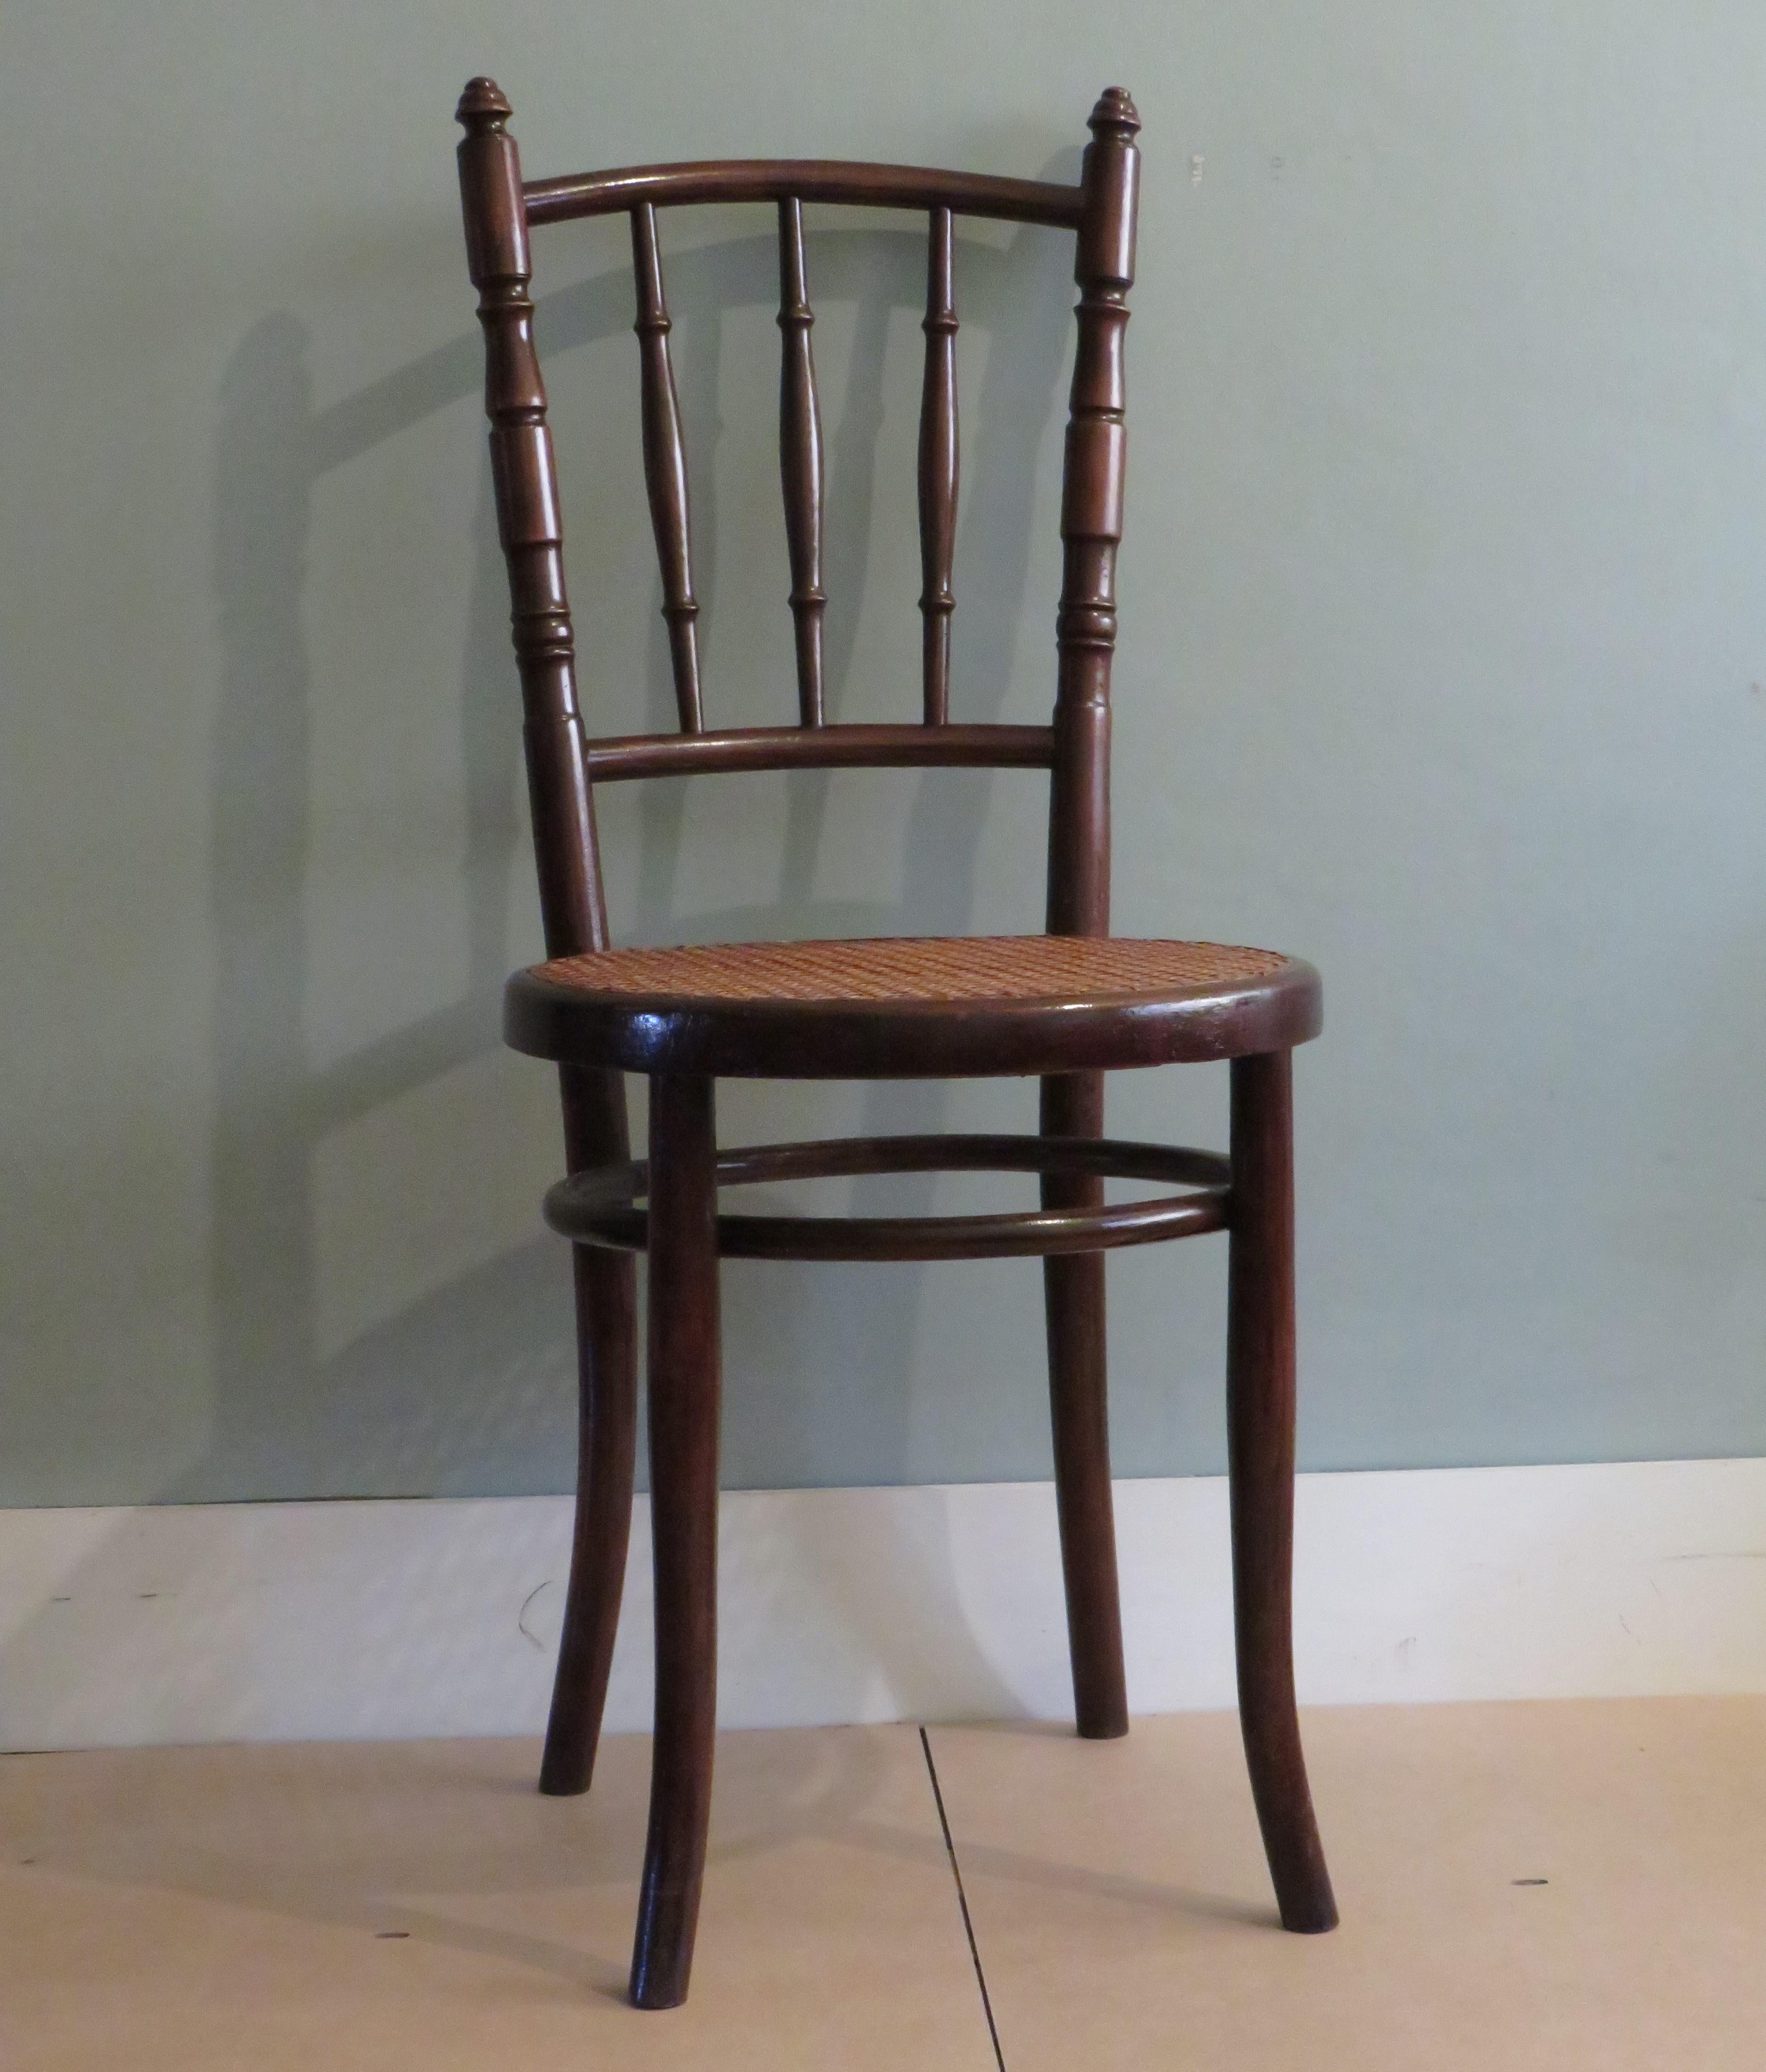 Chaise en bois courbé de Mundus, début du 20e siècle Autriche
Fabriqué par Mundus sous licence de Thonet.
Cette chaise en bois courbé a un siège en sangle tissé à la main et est en très bon état.
Il y a un tampon d'usine présent.
Dimensions : H